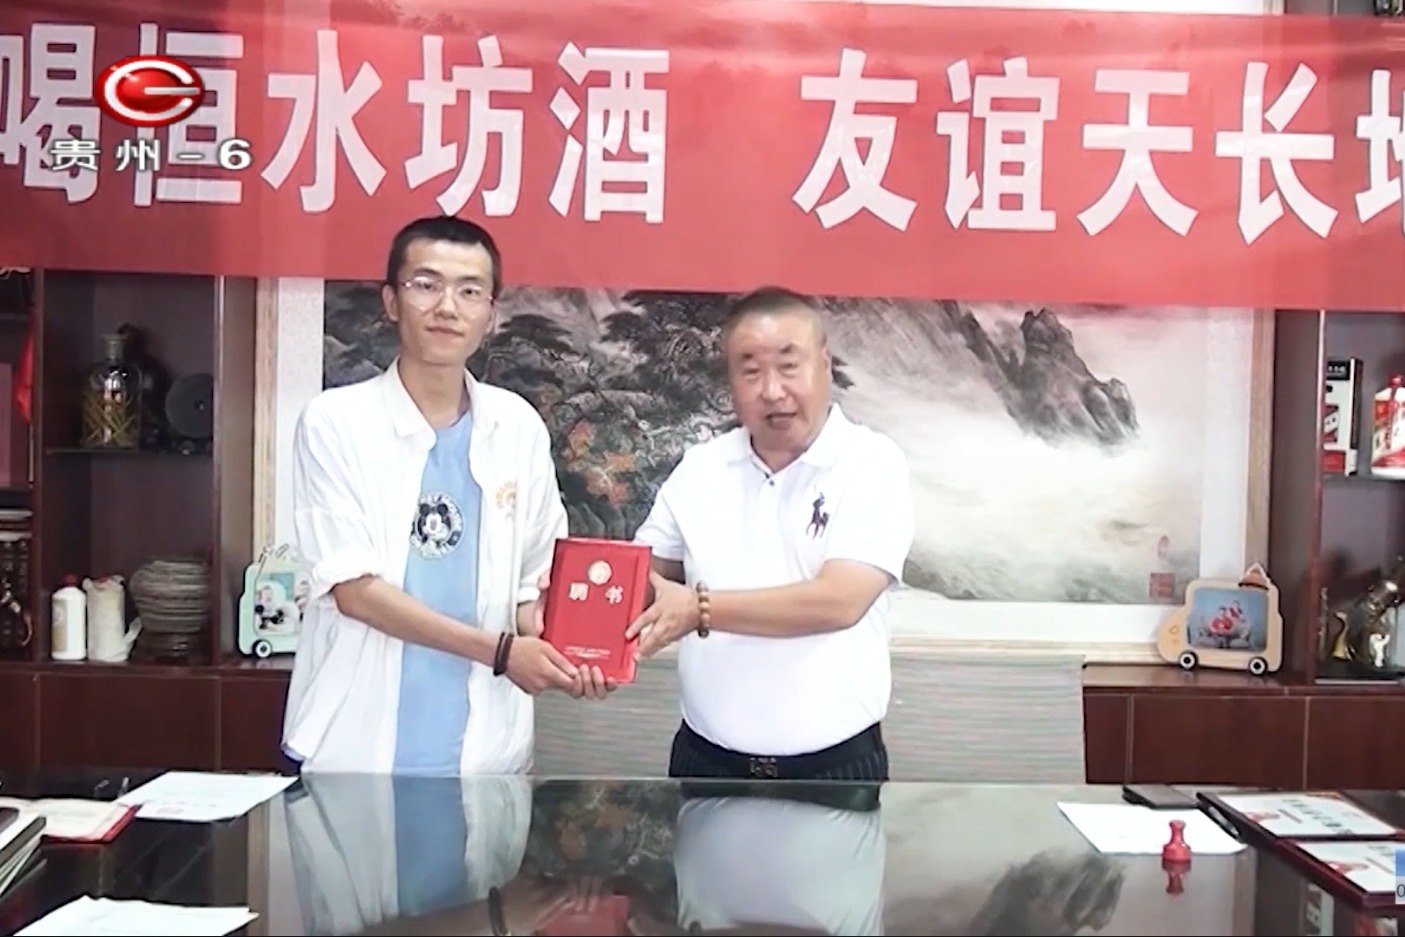 贵州广播电视台6频道播出洪绍乾为“恒水坊”代言签约仪式